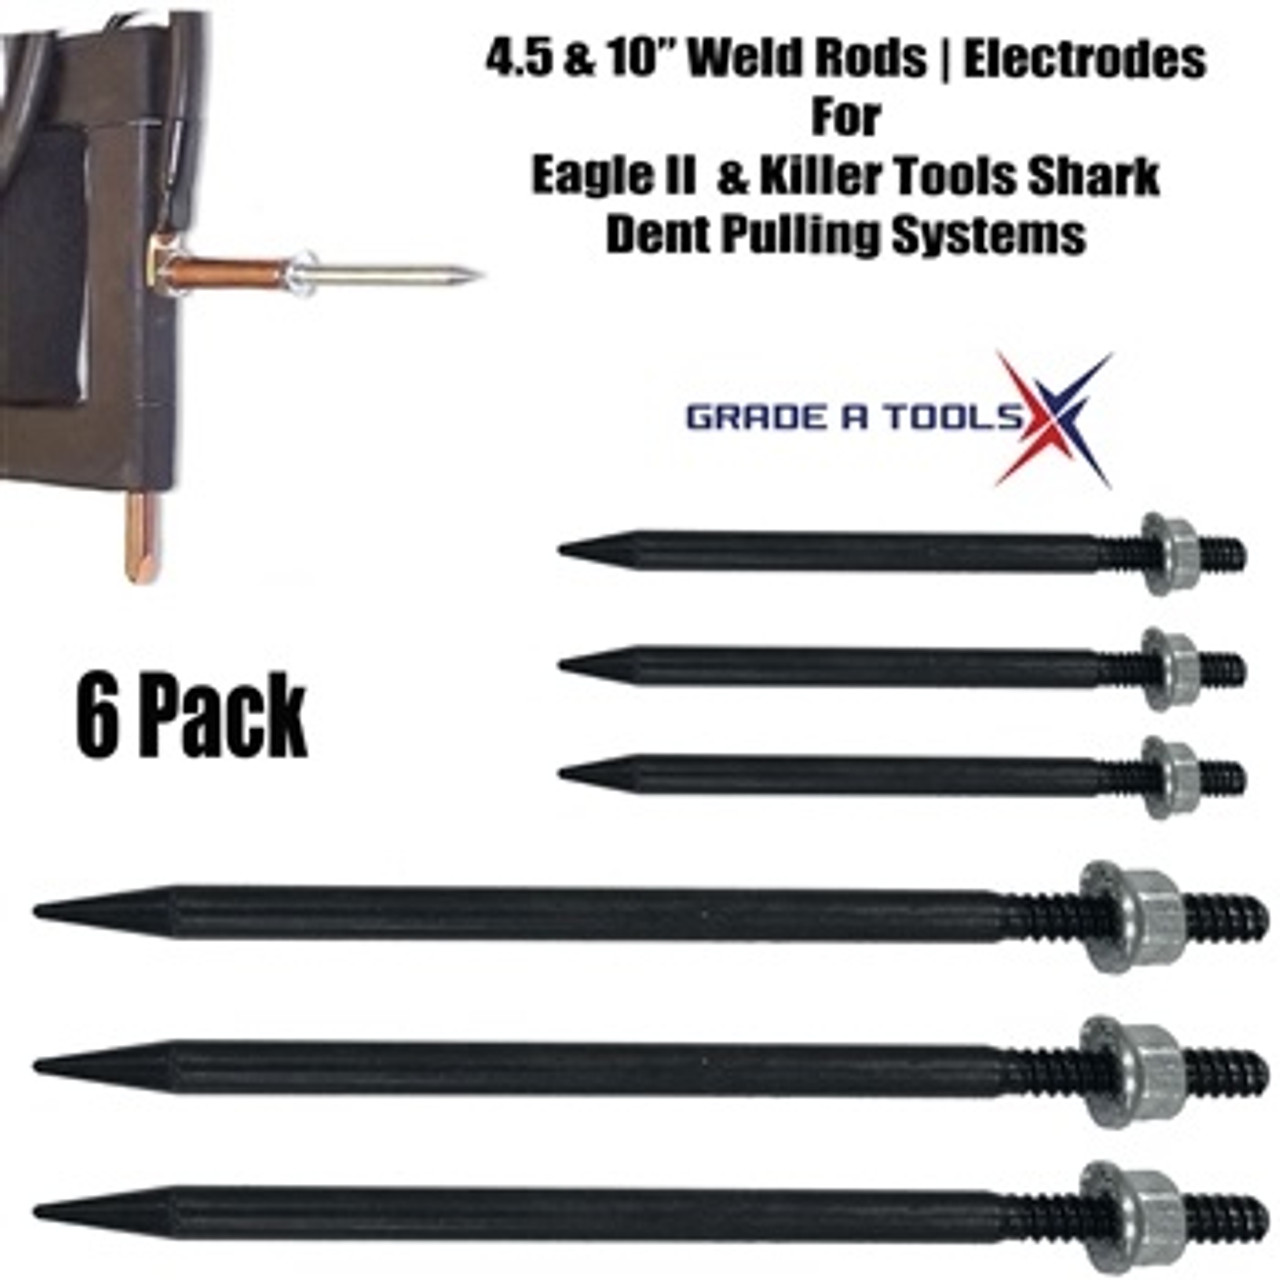 Weld Rod, Electrode 6 Pack -of Eagle II & Killer Tools Shark-1